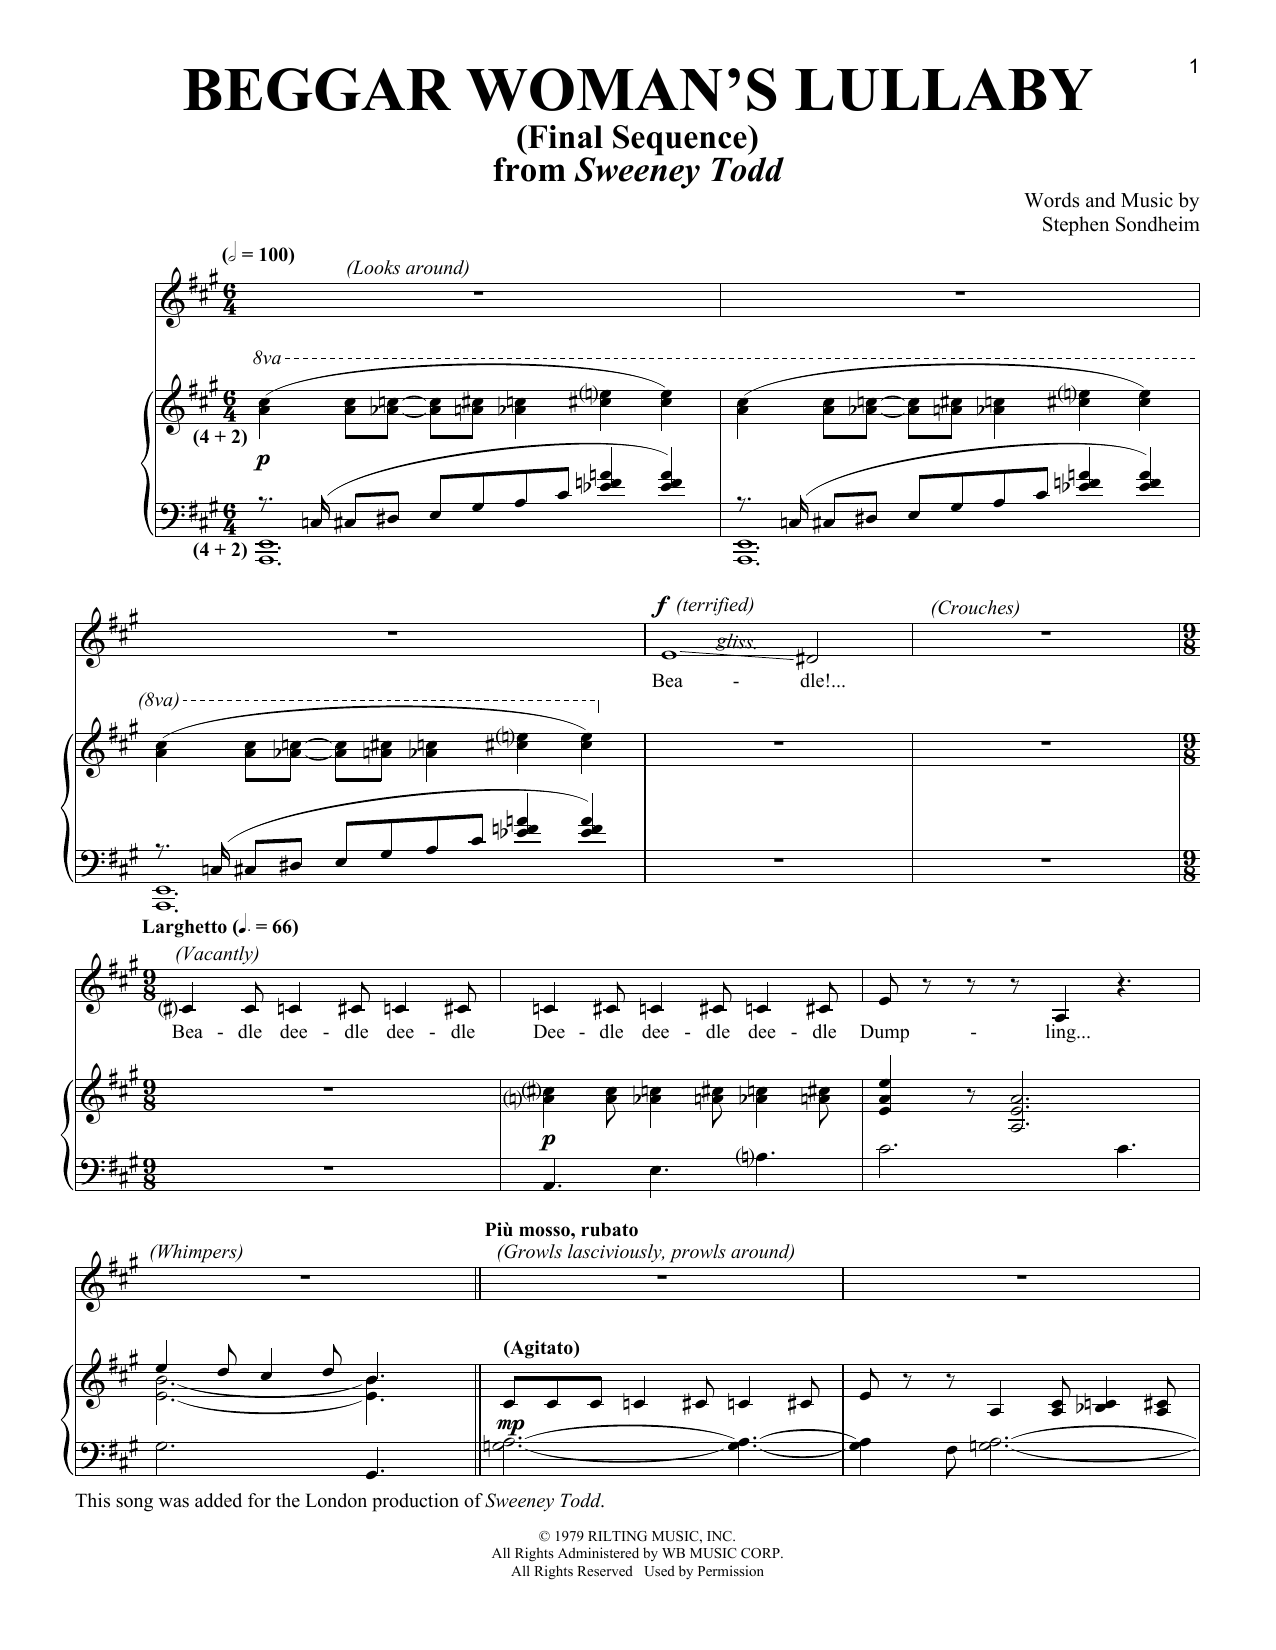 Download Stephen Sondheim Beggar Woman's Lullaby (Final Sequence) Sheet Music